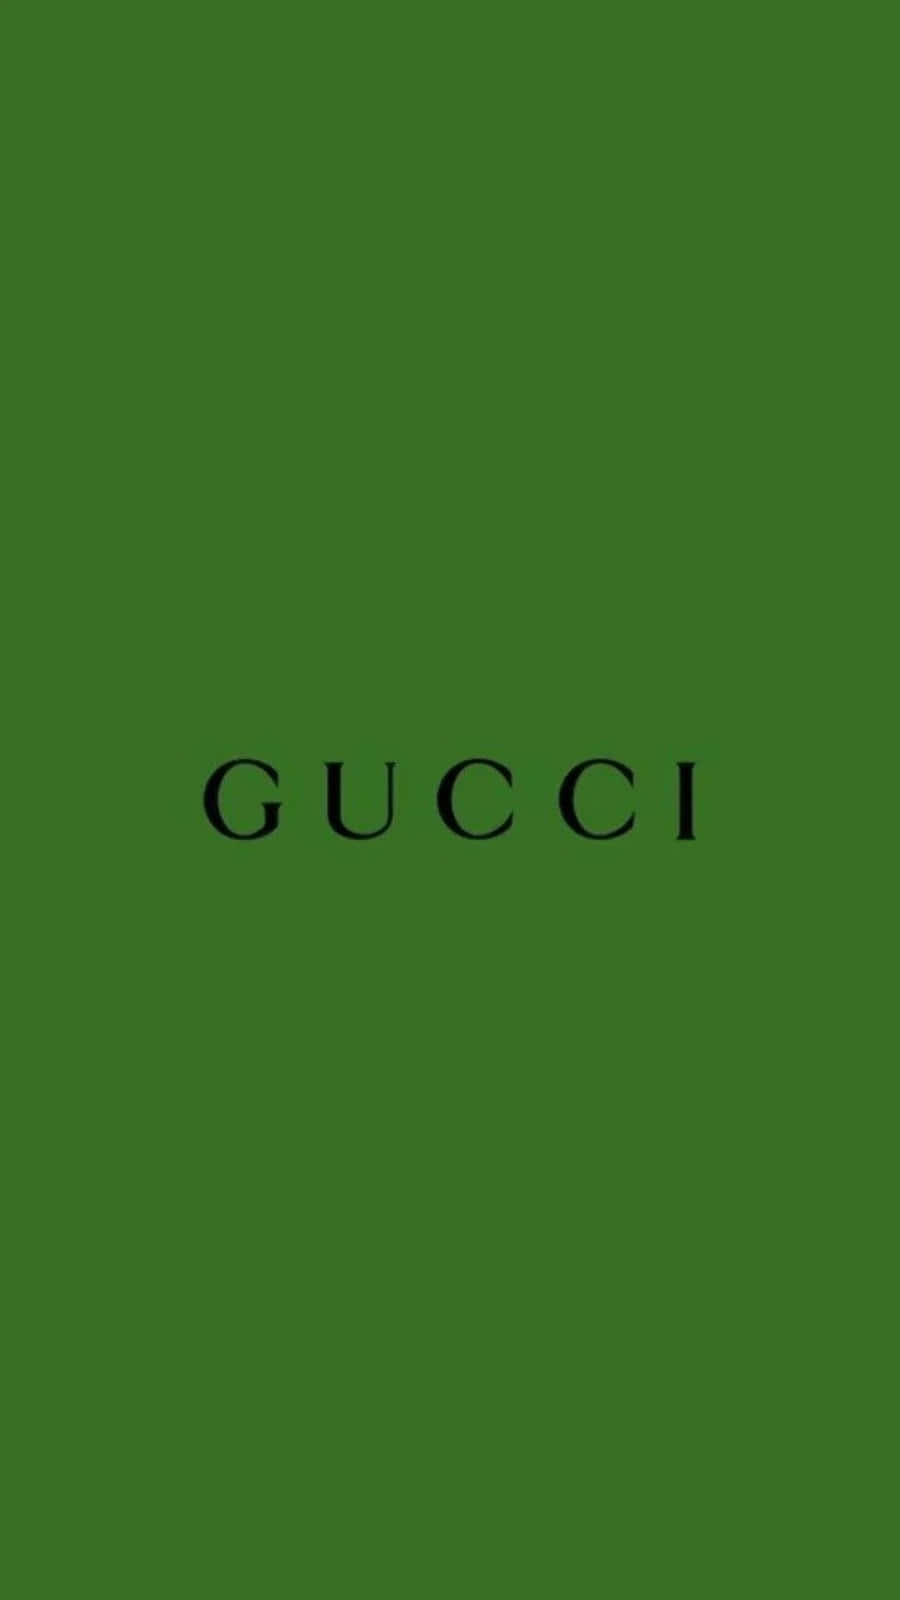 Immagineestetica Verde Gucci